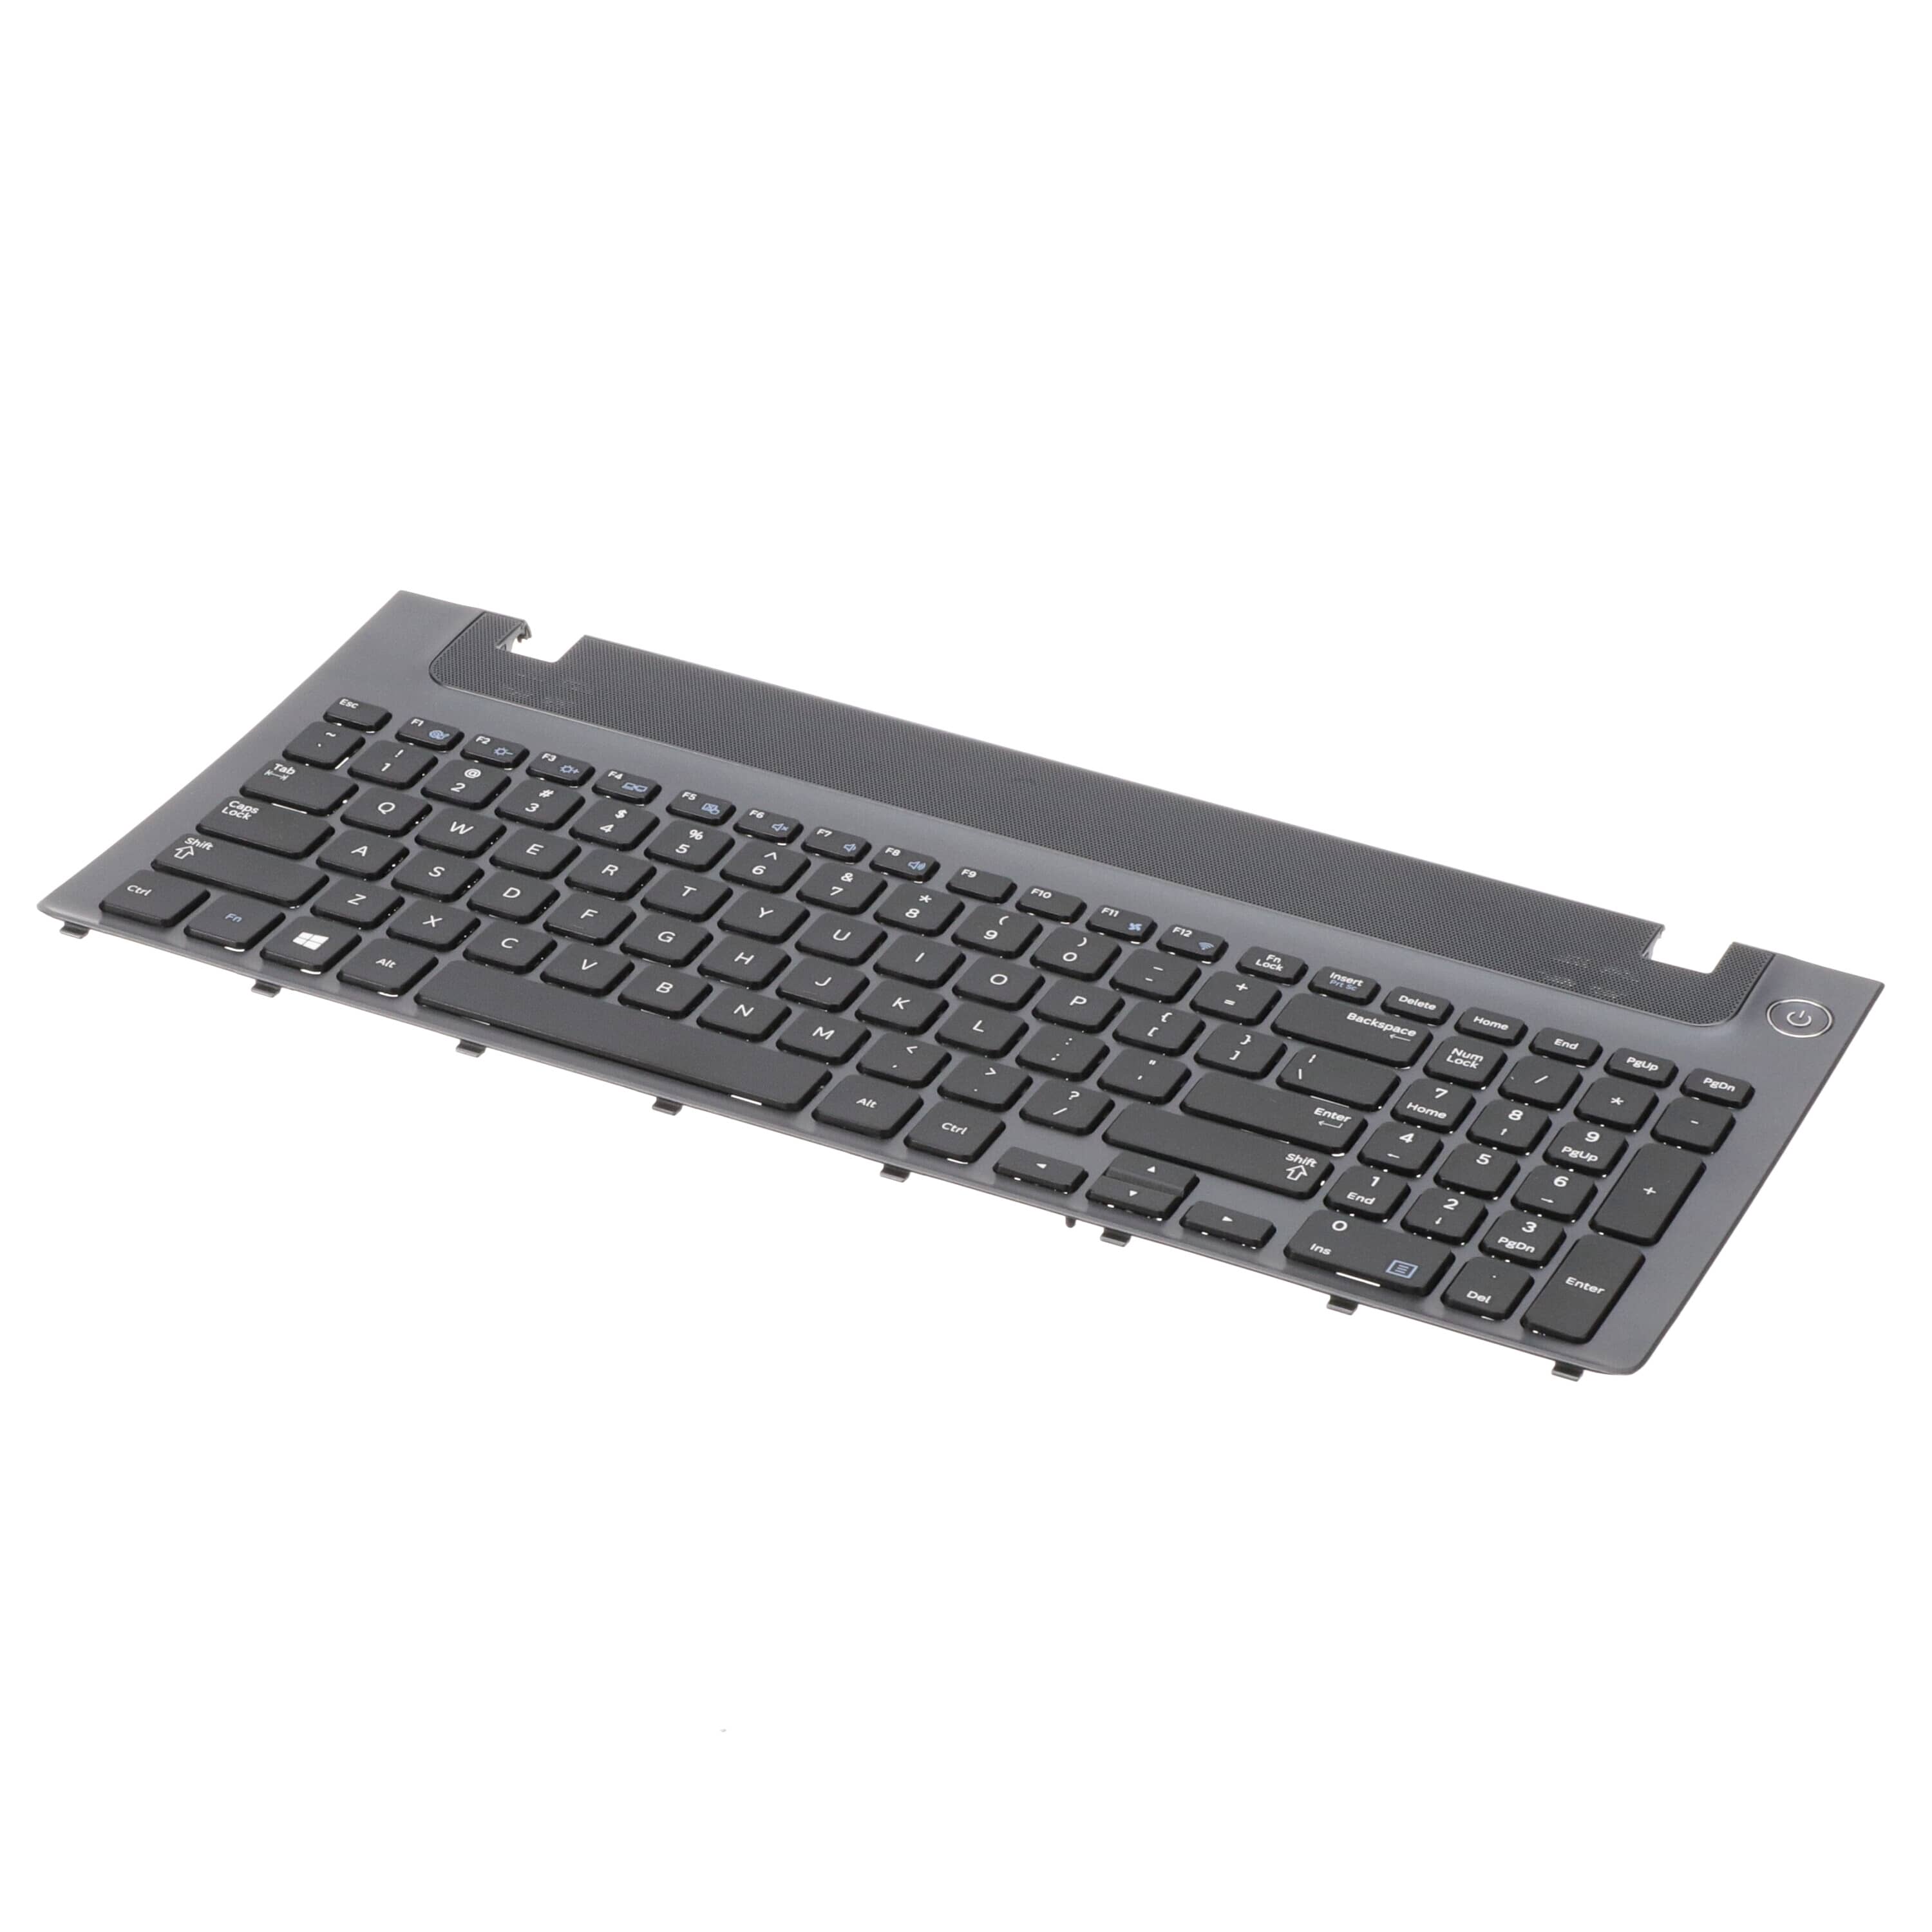 SMGBA75-04093A Keyboard Frame-US